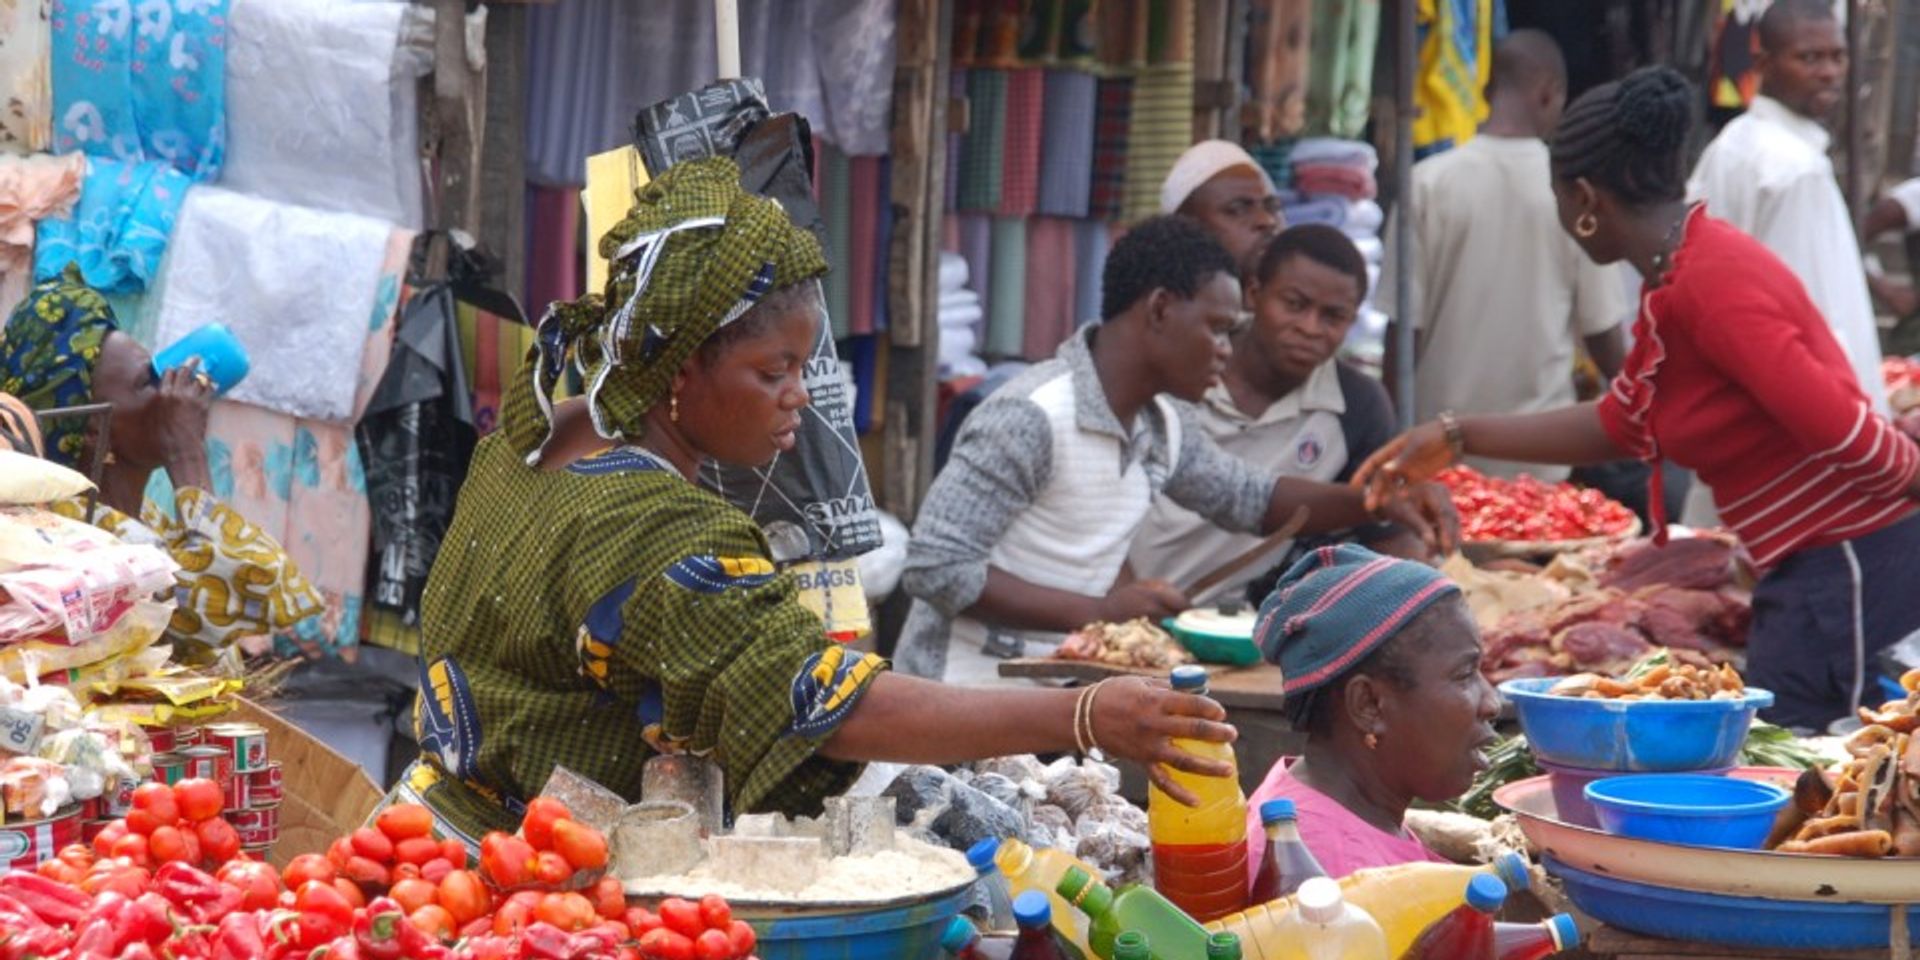  Sur un étal d’un marché en Afrique, une femme saisit une bouteille pour la vendre.